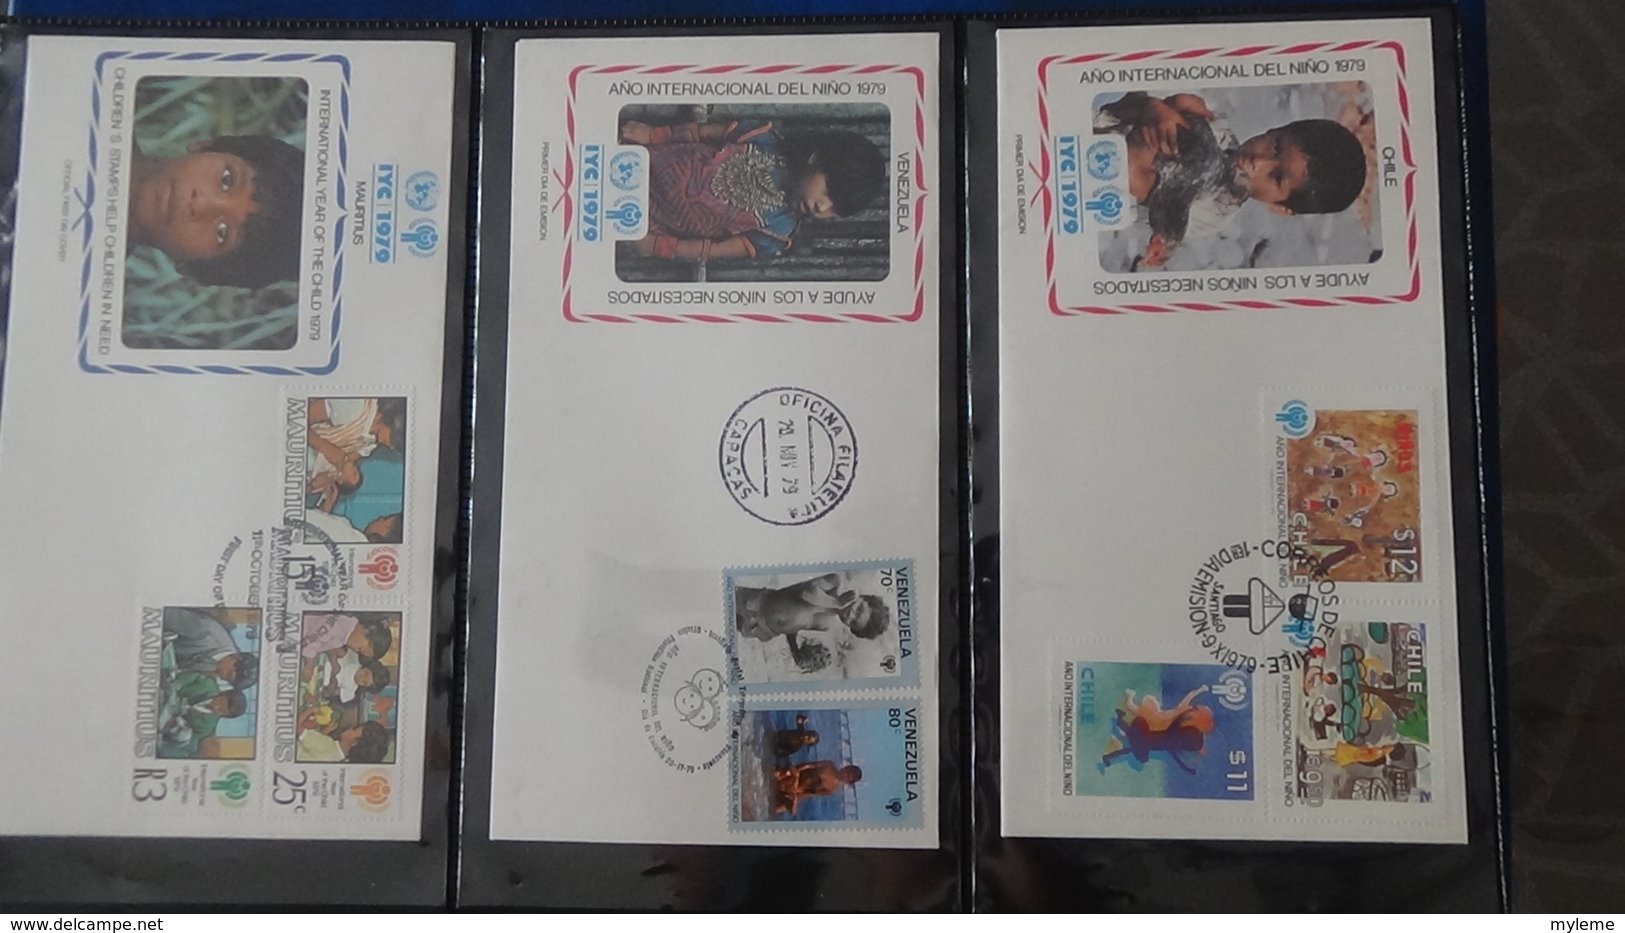 Dispersion d'une collection d'enveloppe 1er jour et autres dont 111 sur le thème de l'enfant (UNICEF)